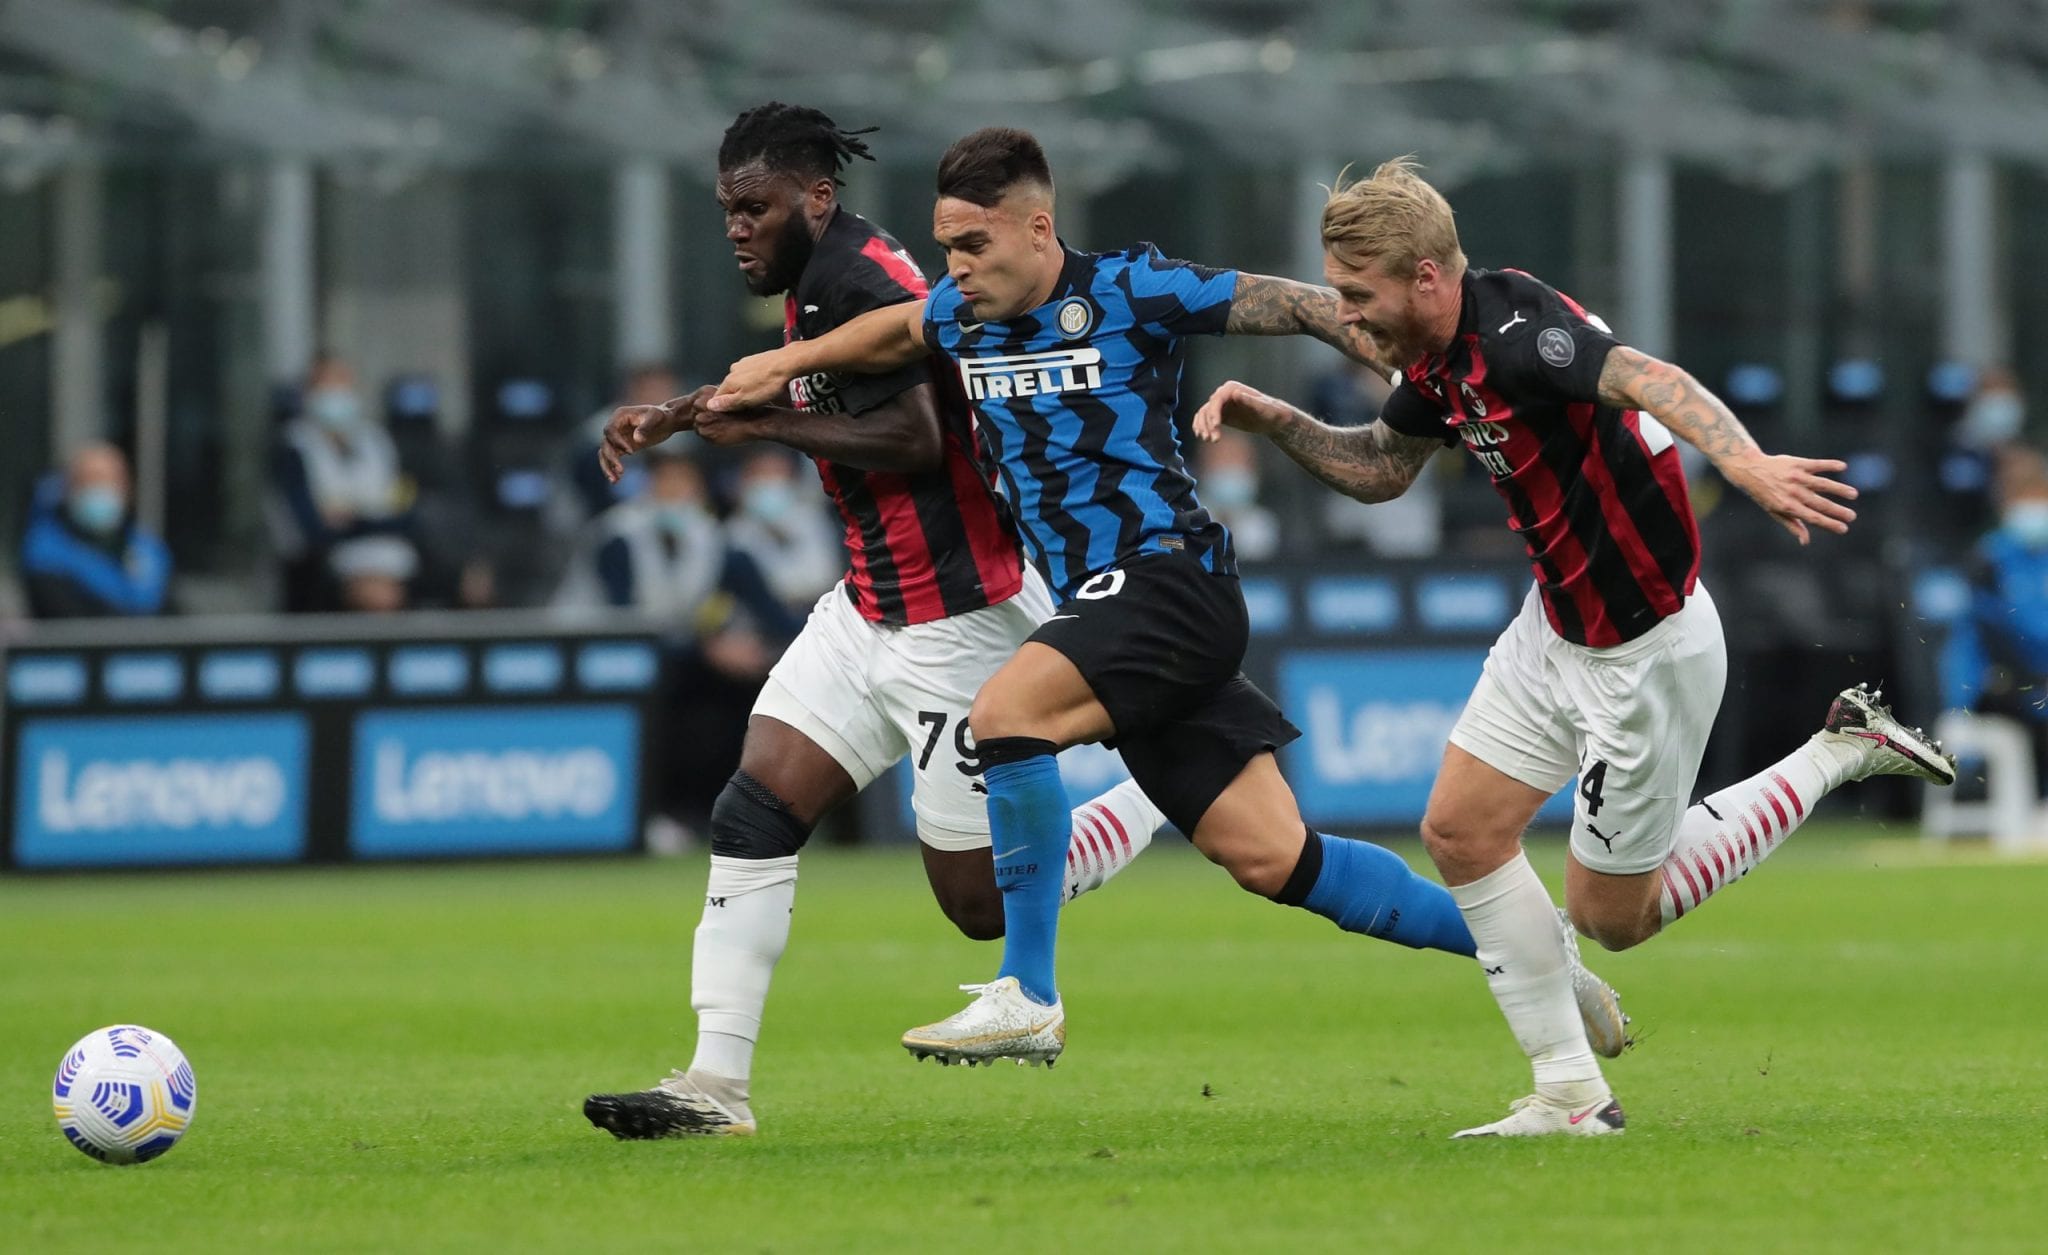 Il derby Inter vs Milan. Cominciano i quarti di finale di Coppa Italia, da questa sera alle 20.45 su RaiUno